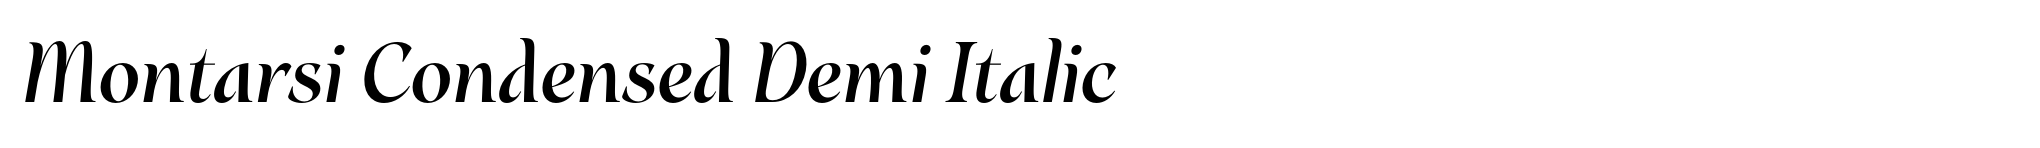 Montarsi Condensed Demi Italic image